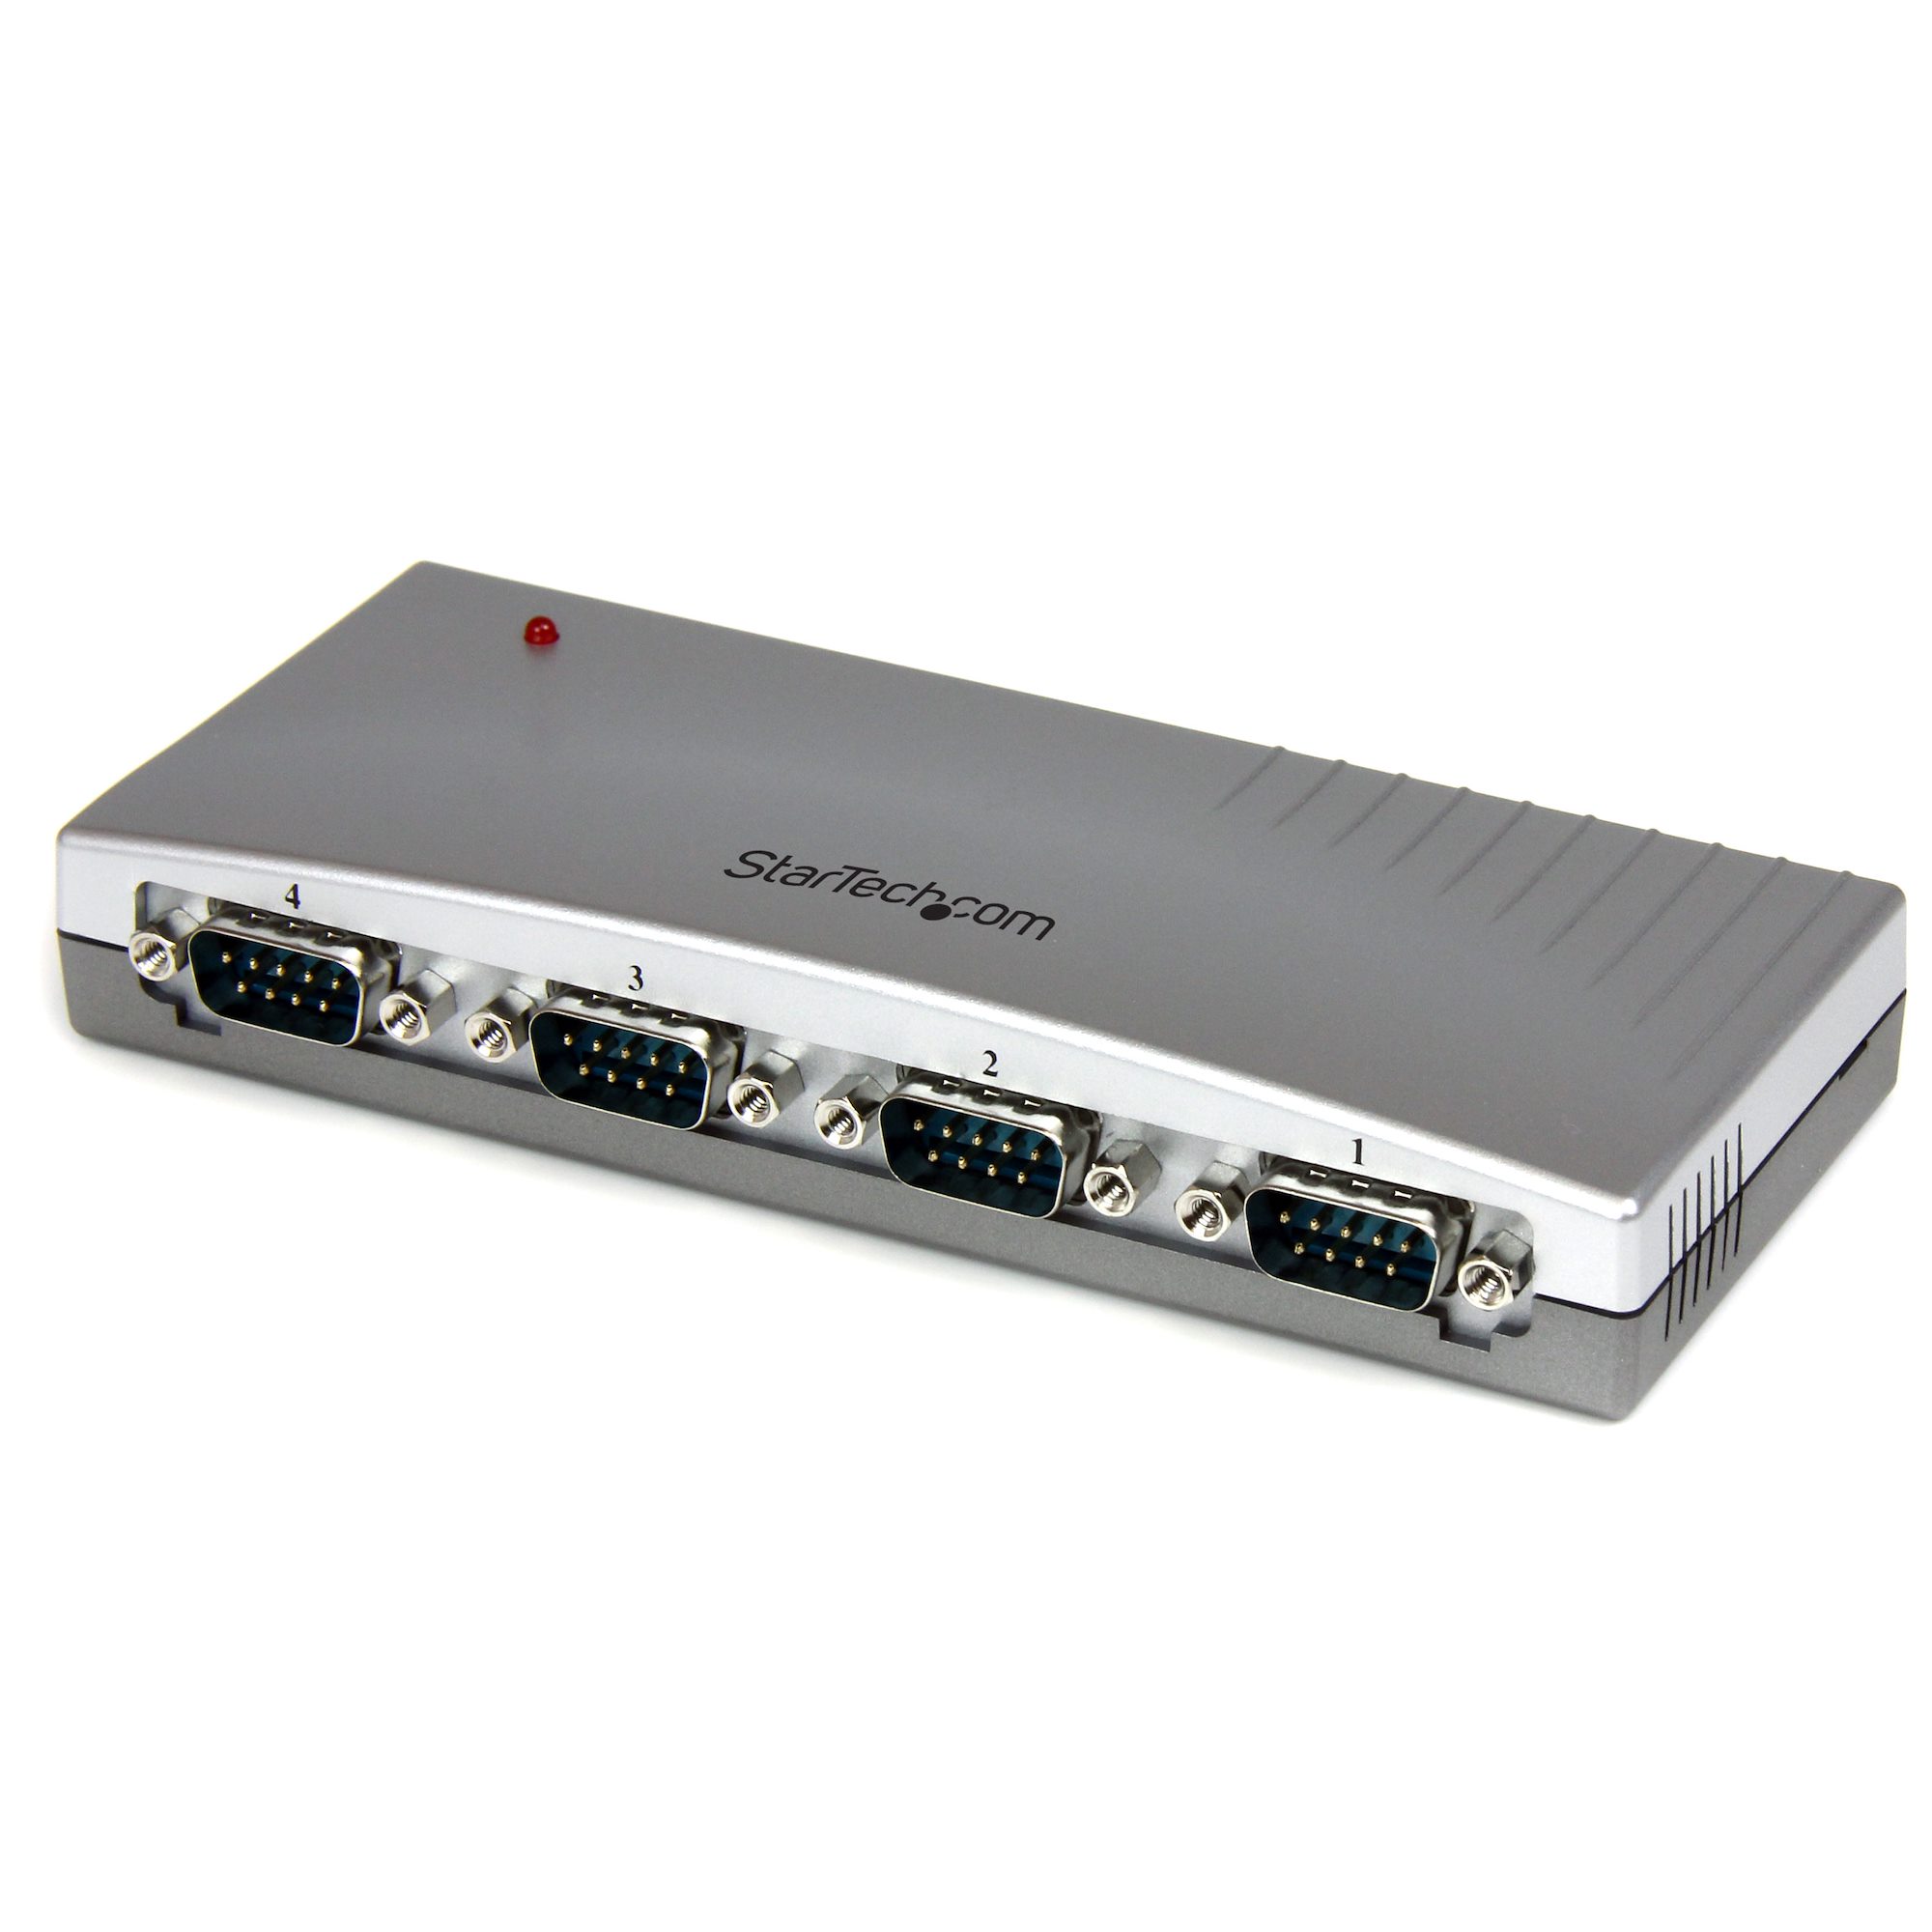 Port USB to RS232 Serial Adapter Hub シリアルカード  アダプタ 日本